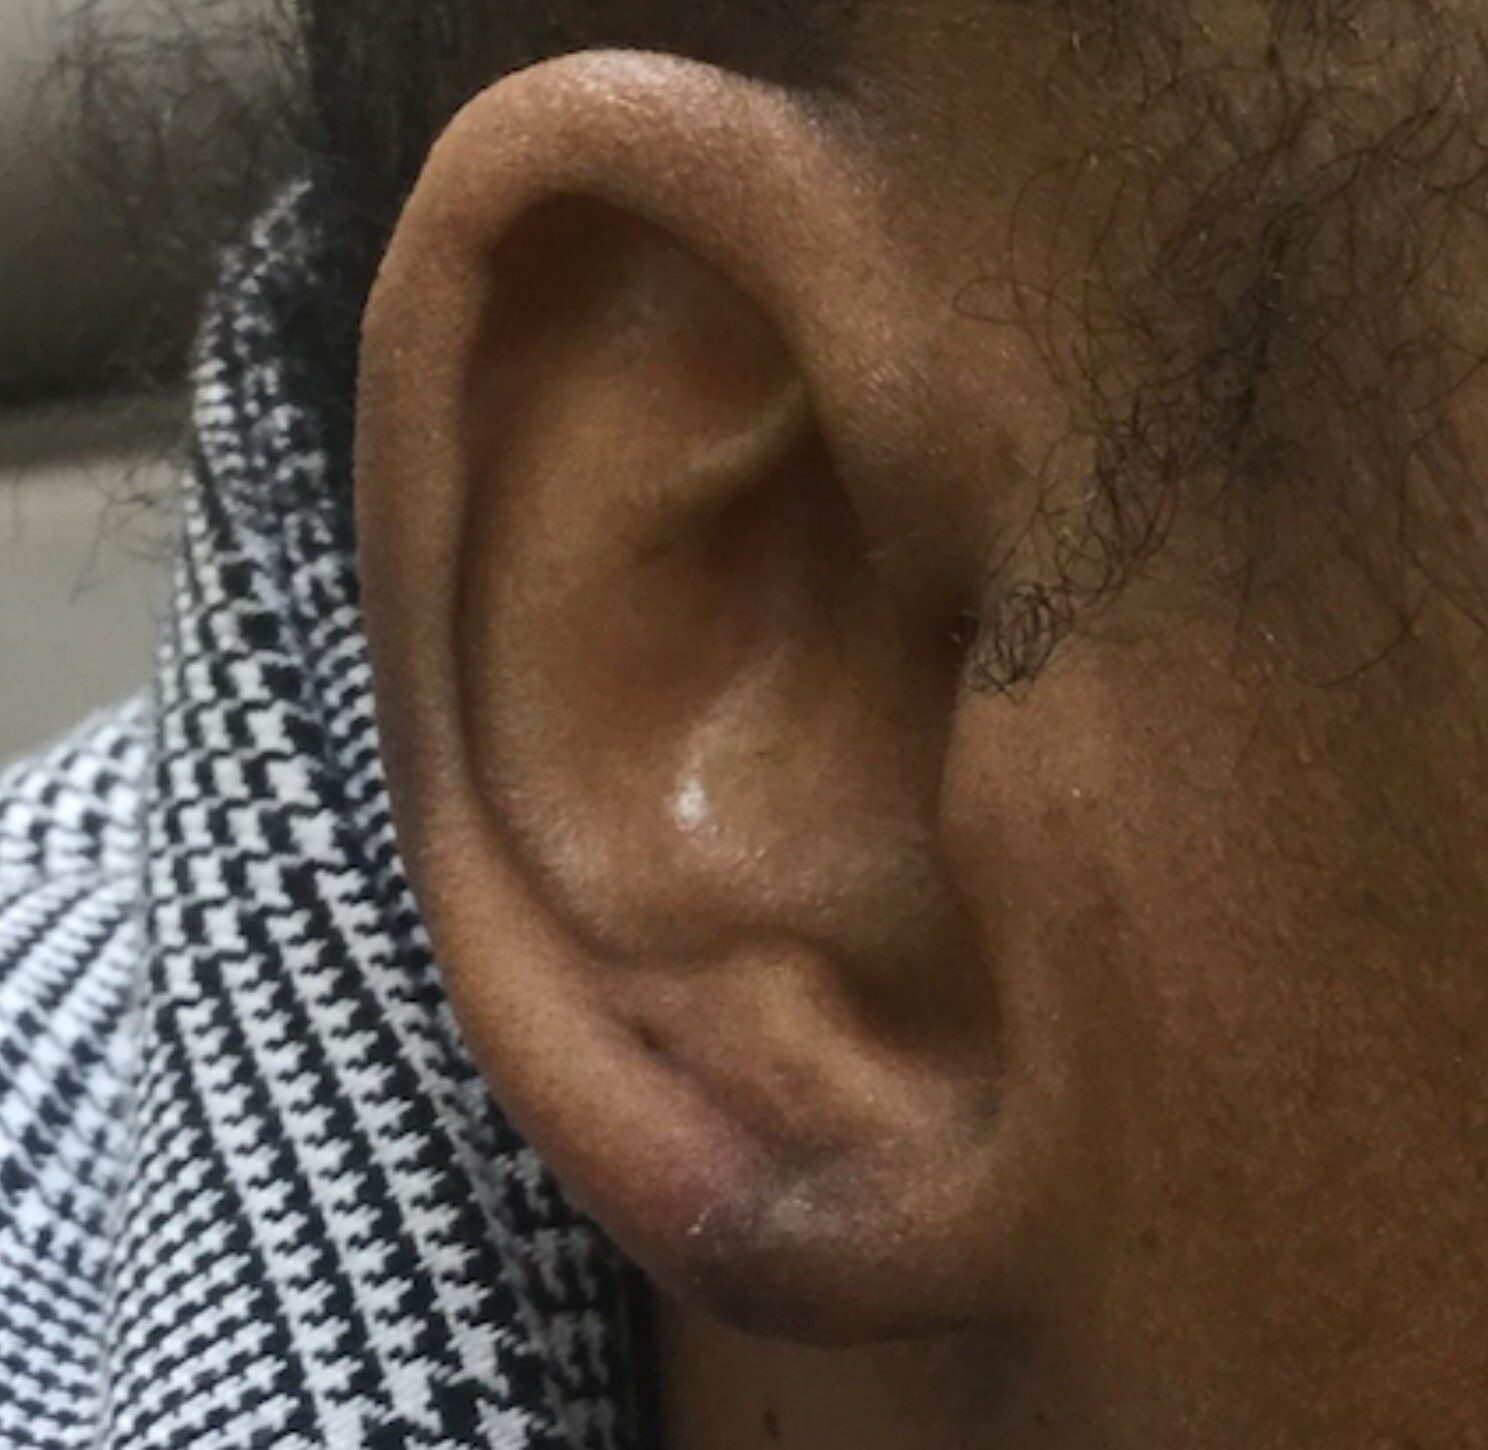 torn earlobe repair after